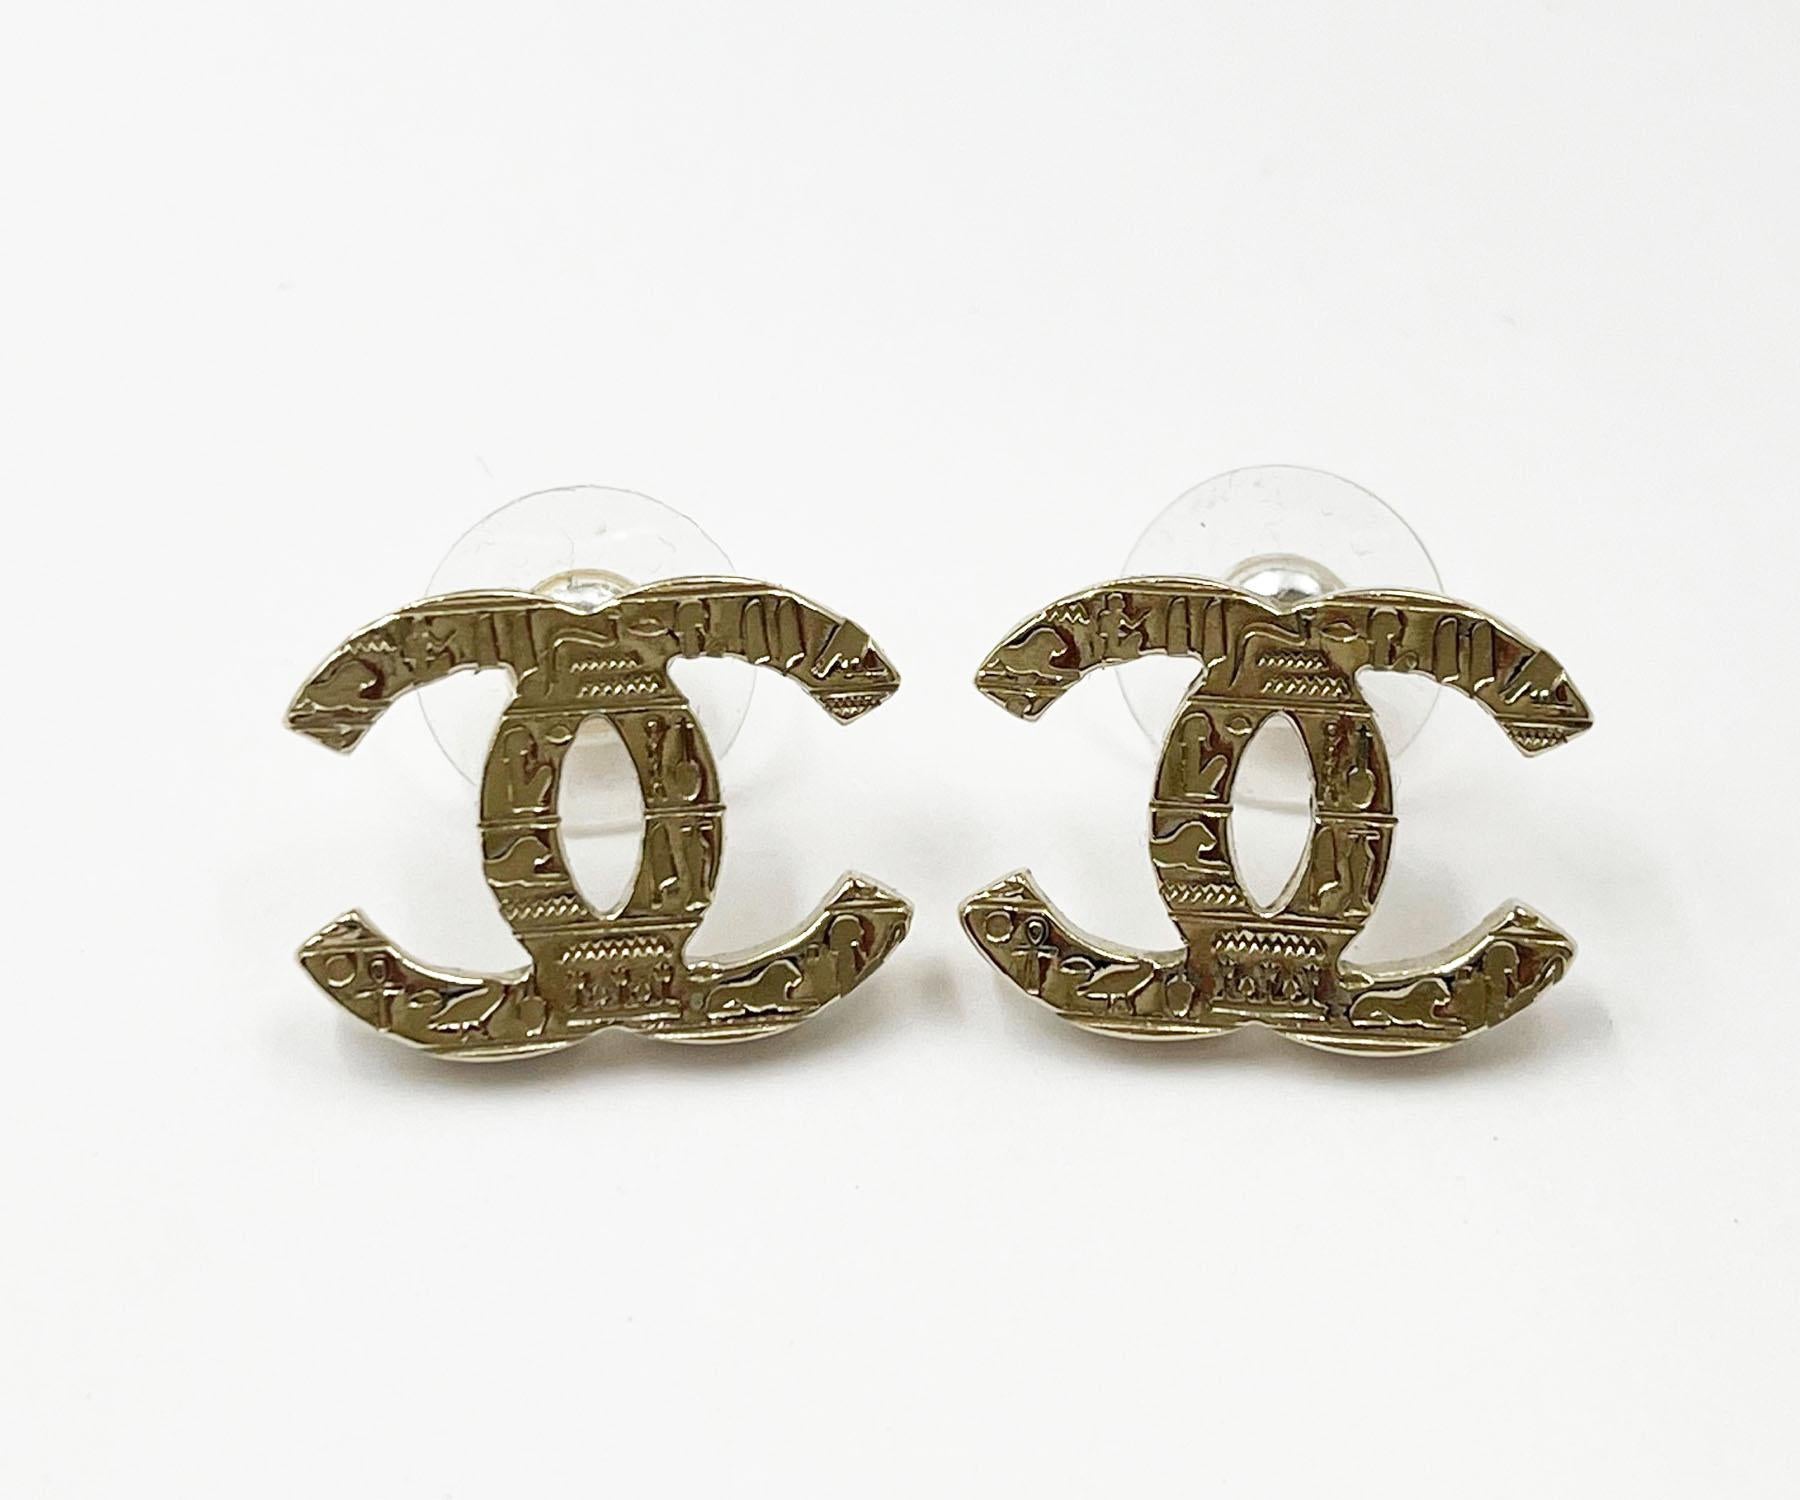 Chanel Gold CC Hieroglyphen-Ohrringe mit durchbohrten Ohrringen

*Markierung 19
*Hergestellt in Frankreich
*Mit Originalverpackung, Tasche und Booklet

-Sie ist ungefähr 0,75